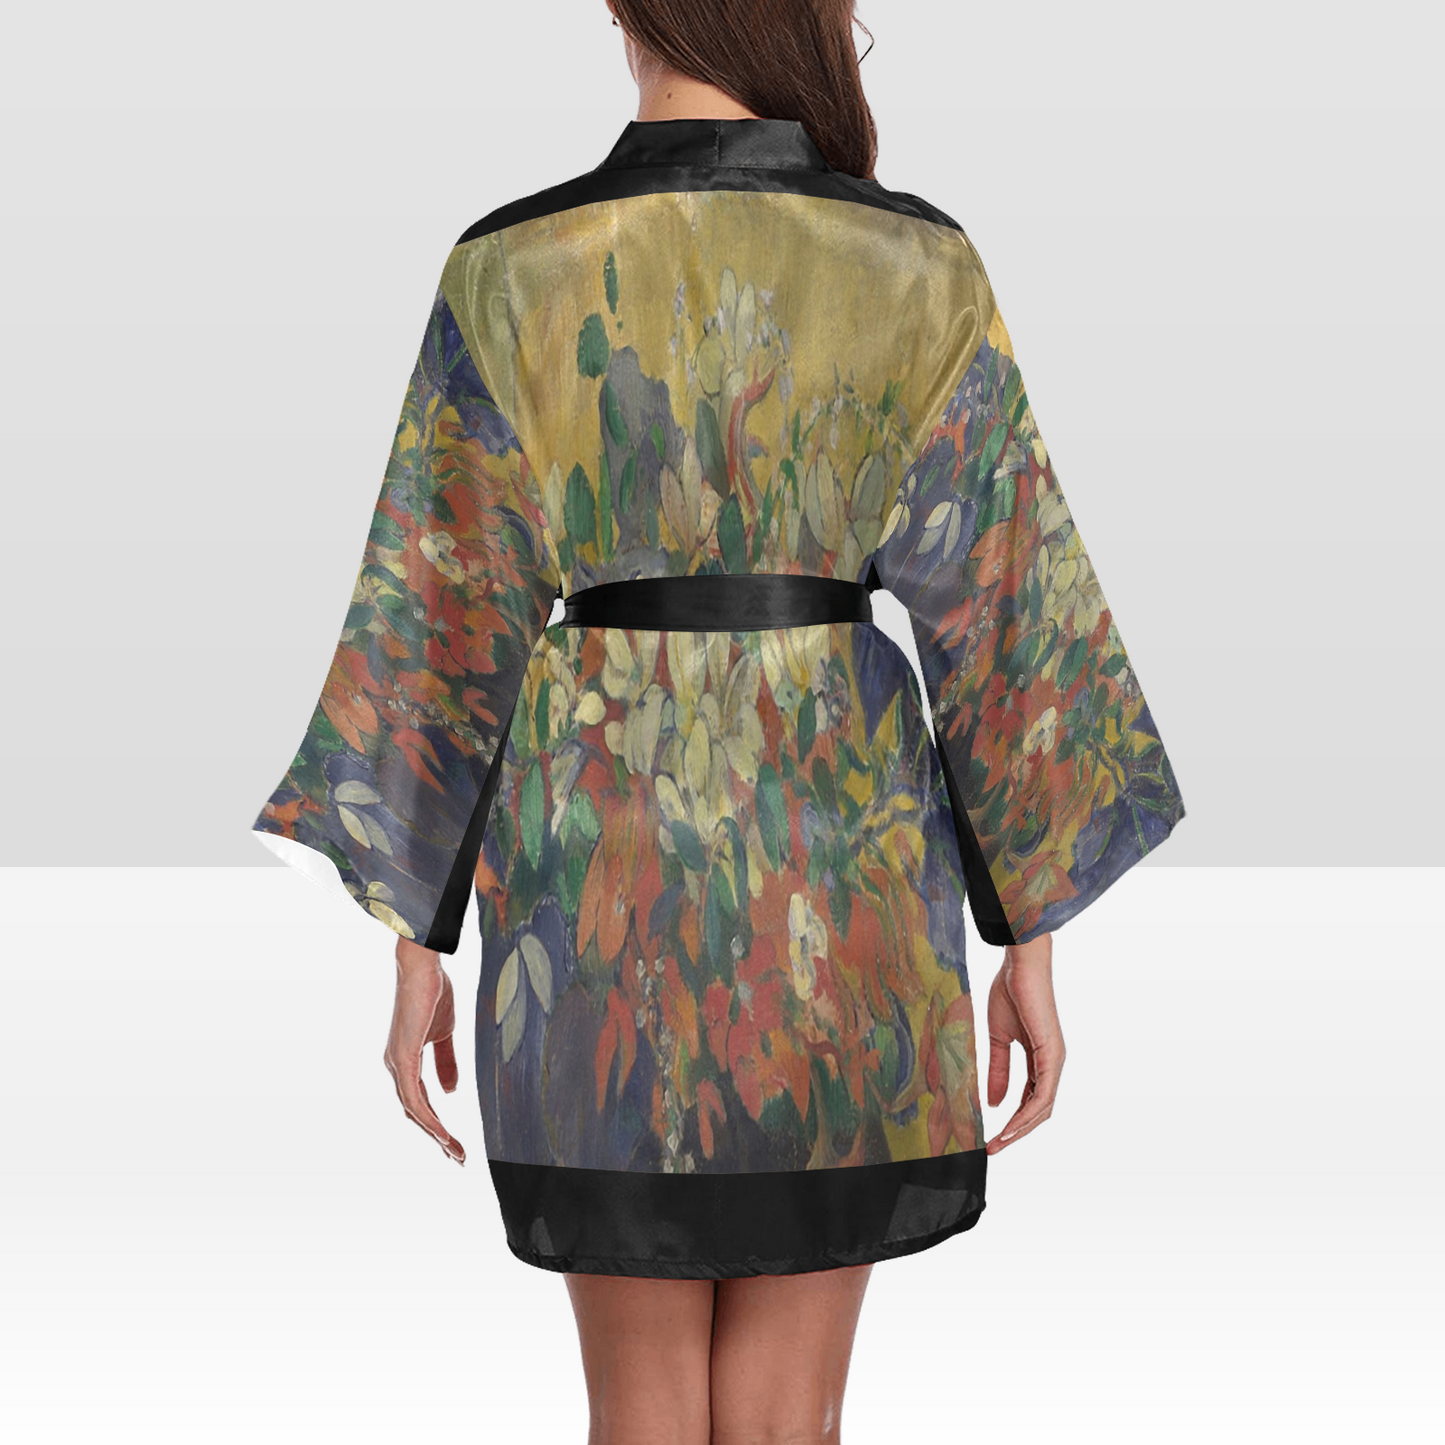 Vintage Floral Kimono Robe, Black or White Trim, Sizes XS to 2XL, Design 10